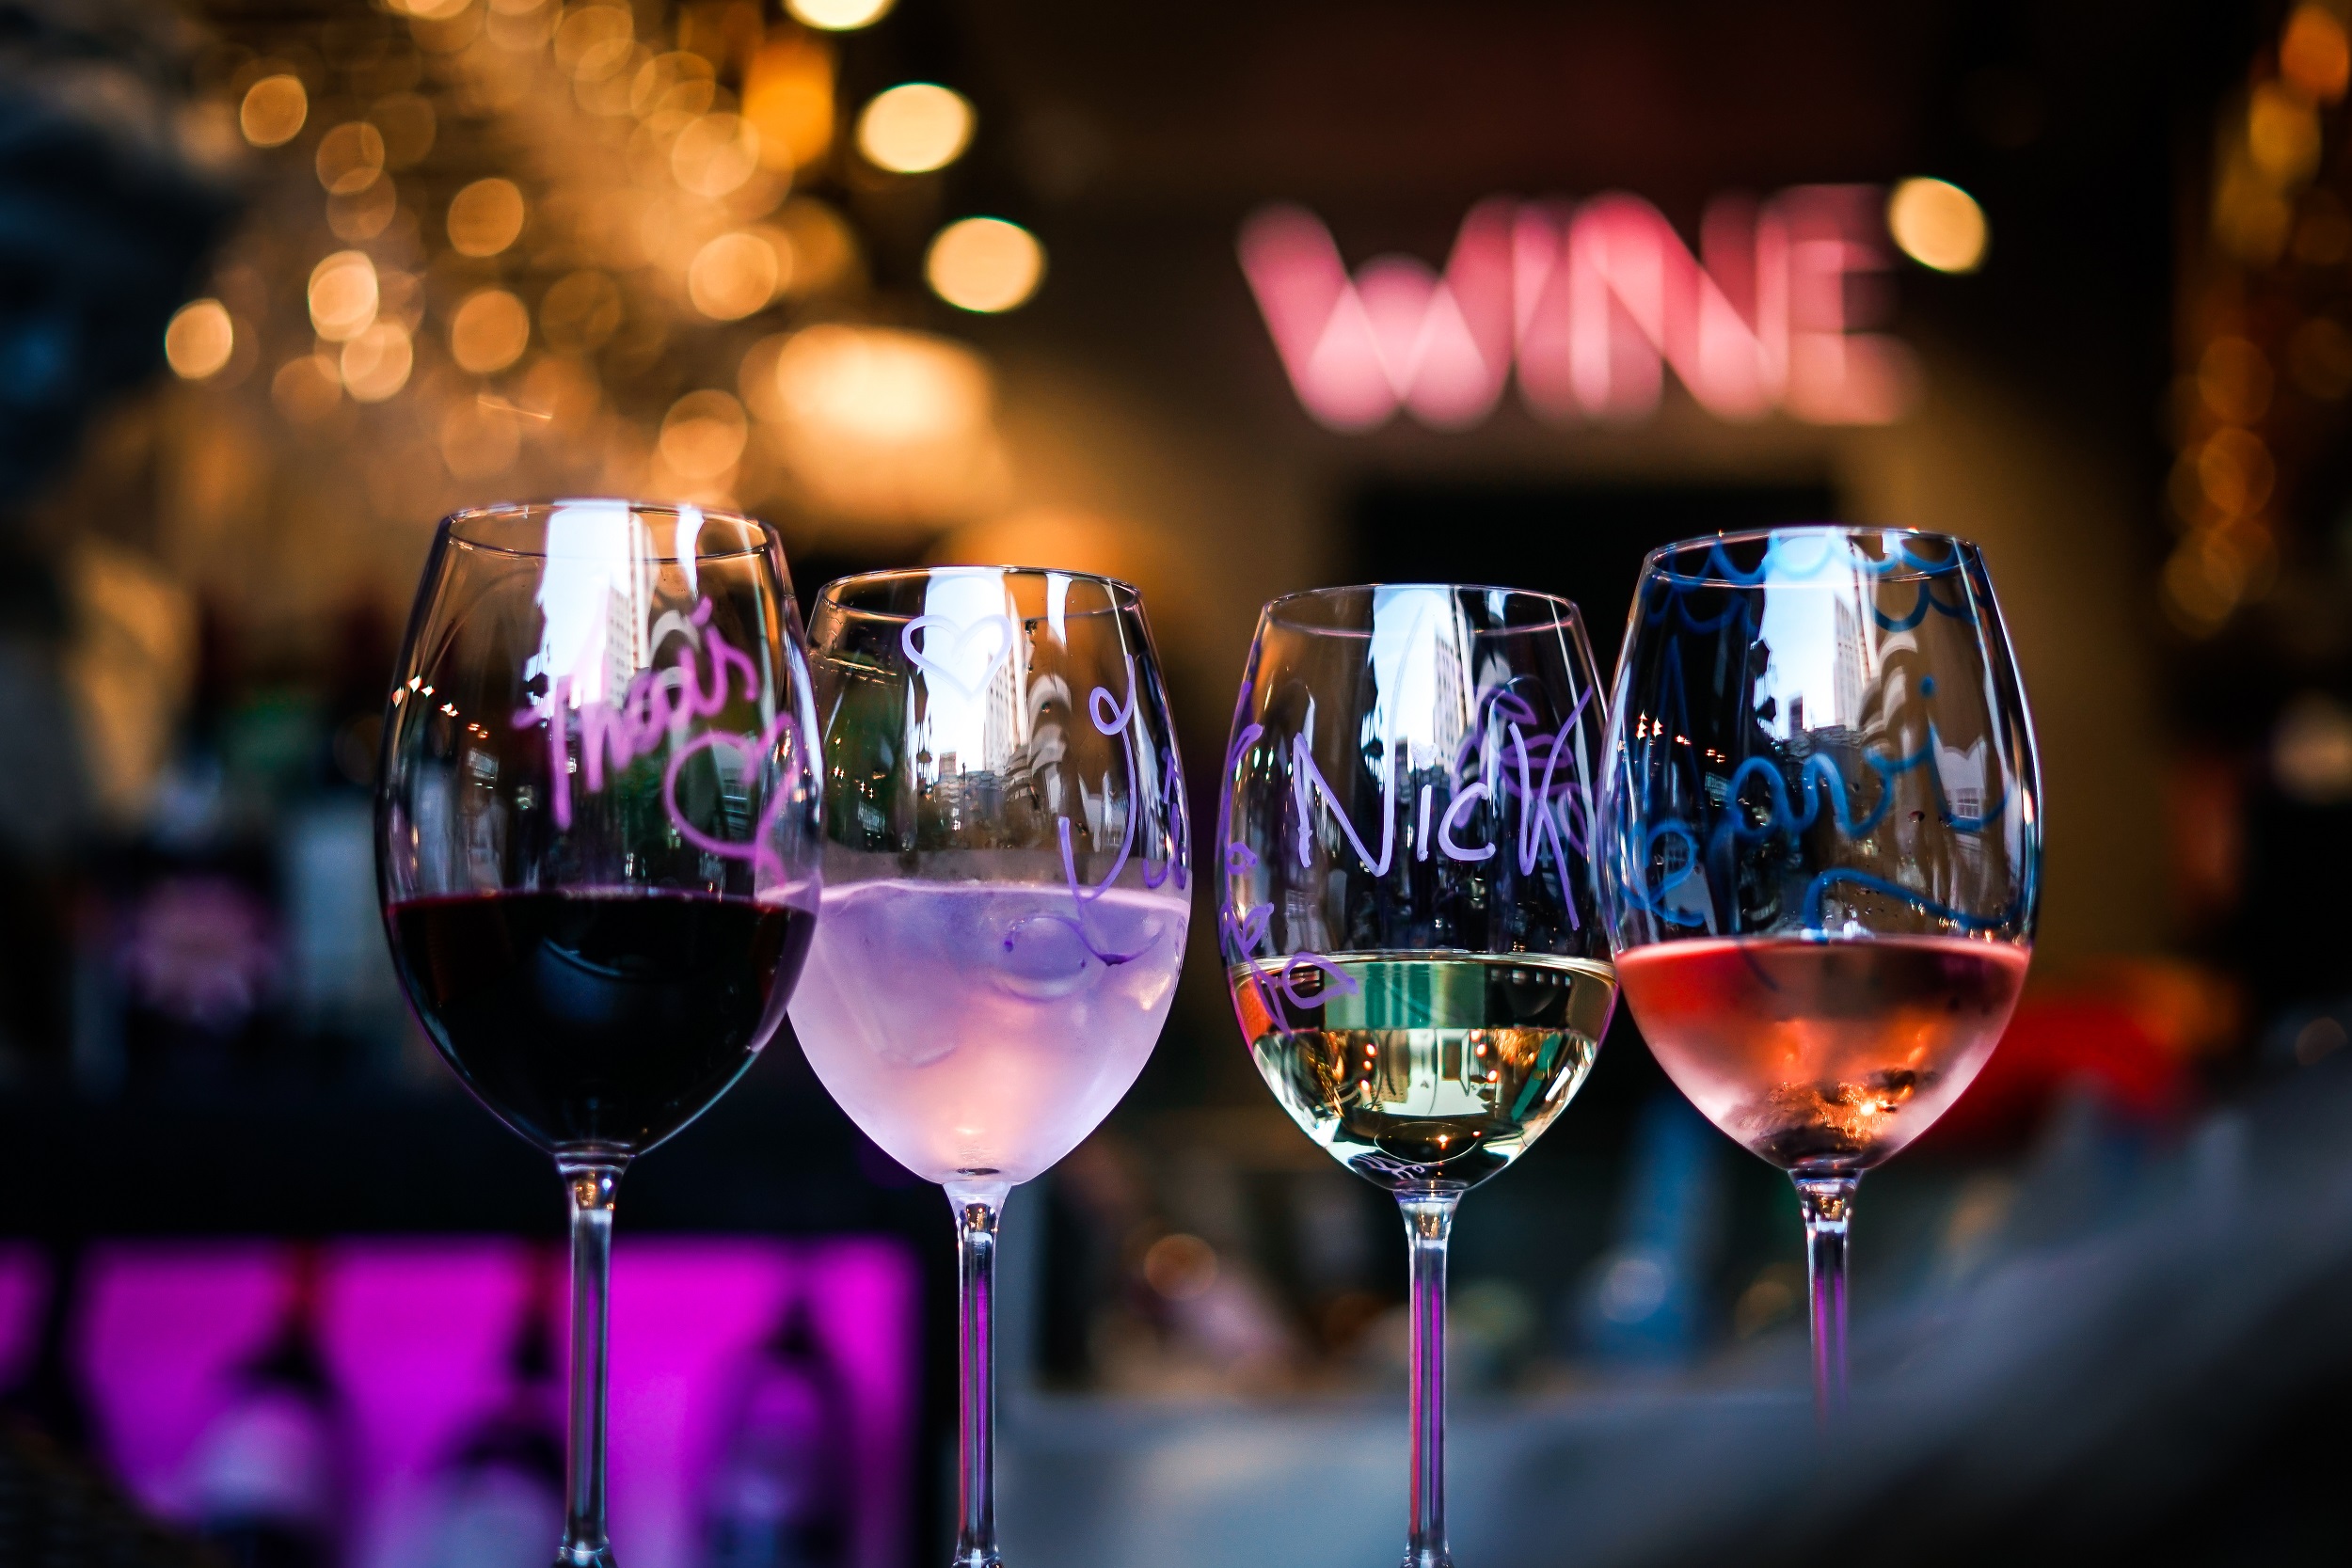 Open de vinho e Discotecagem é no Diô Wine Bar!